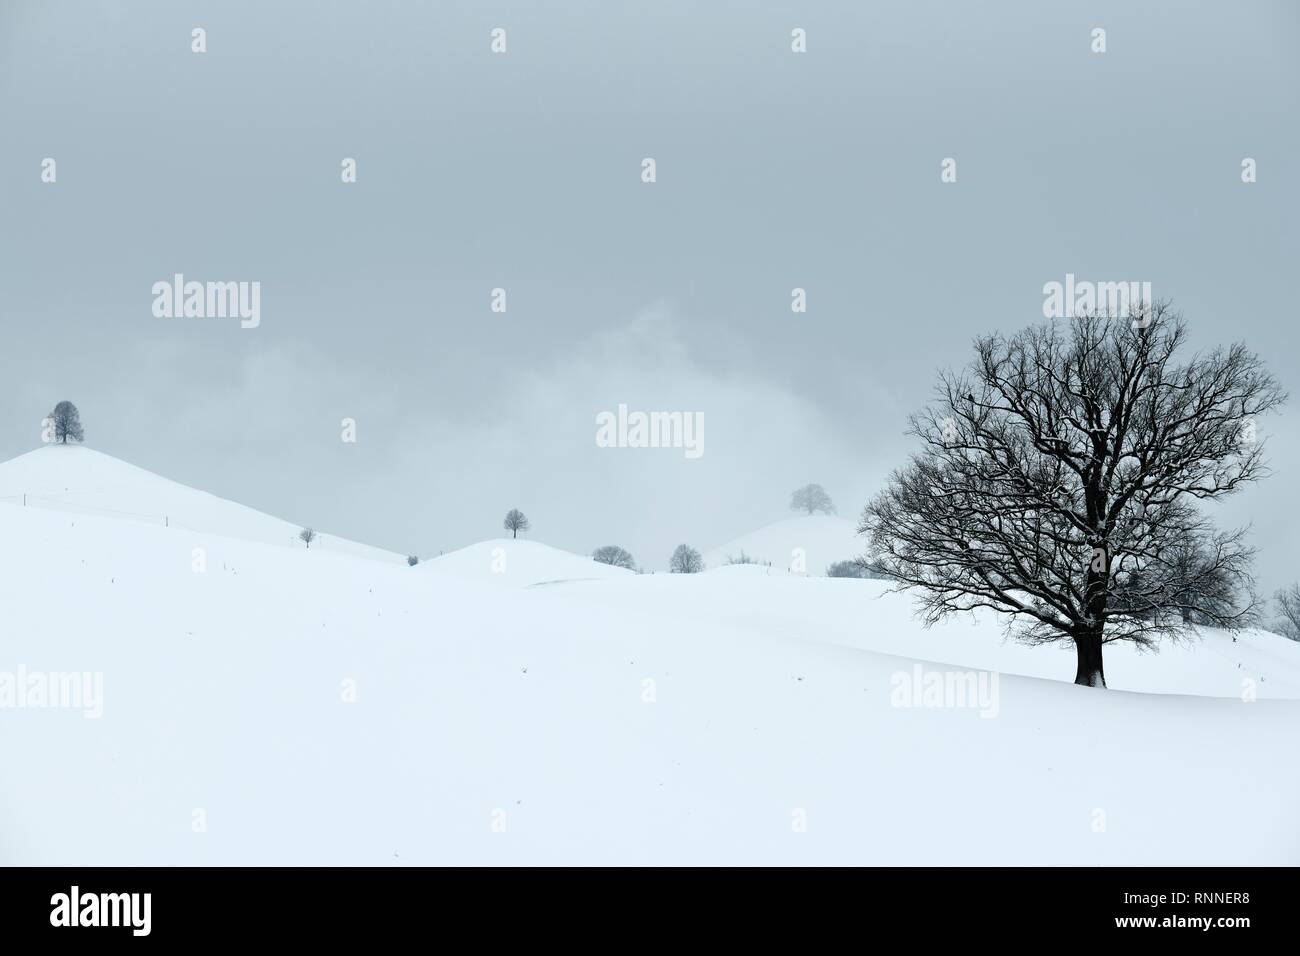 Cubiertas de nieve, el paisaje de morrenas con tilos (Tilia) en colinas, Hirzel, Cantón de Zurich, Suiza Foto de stock